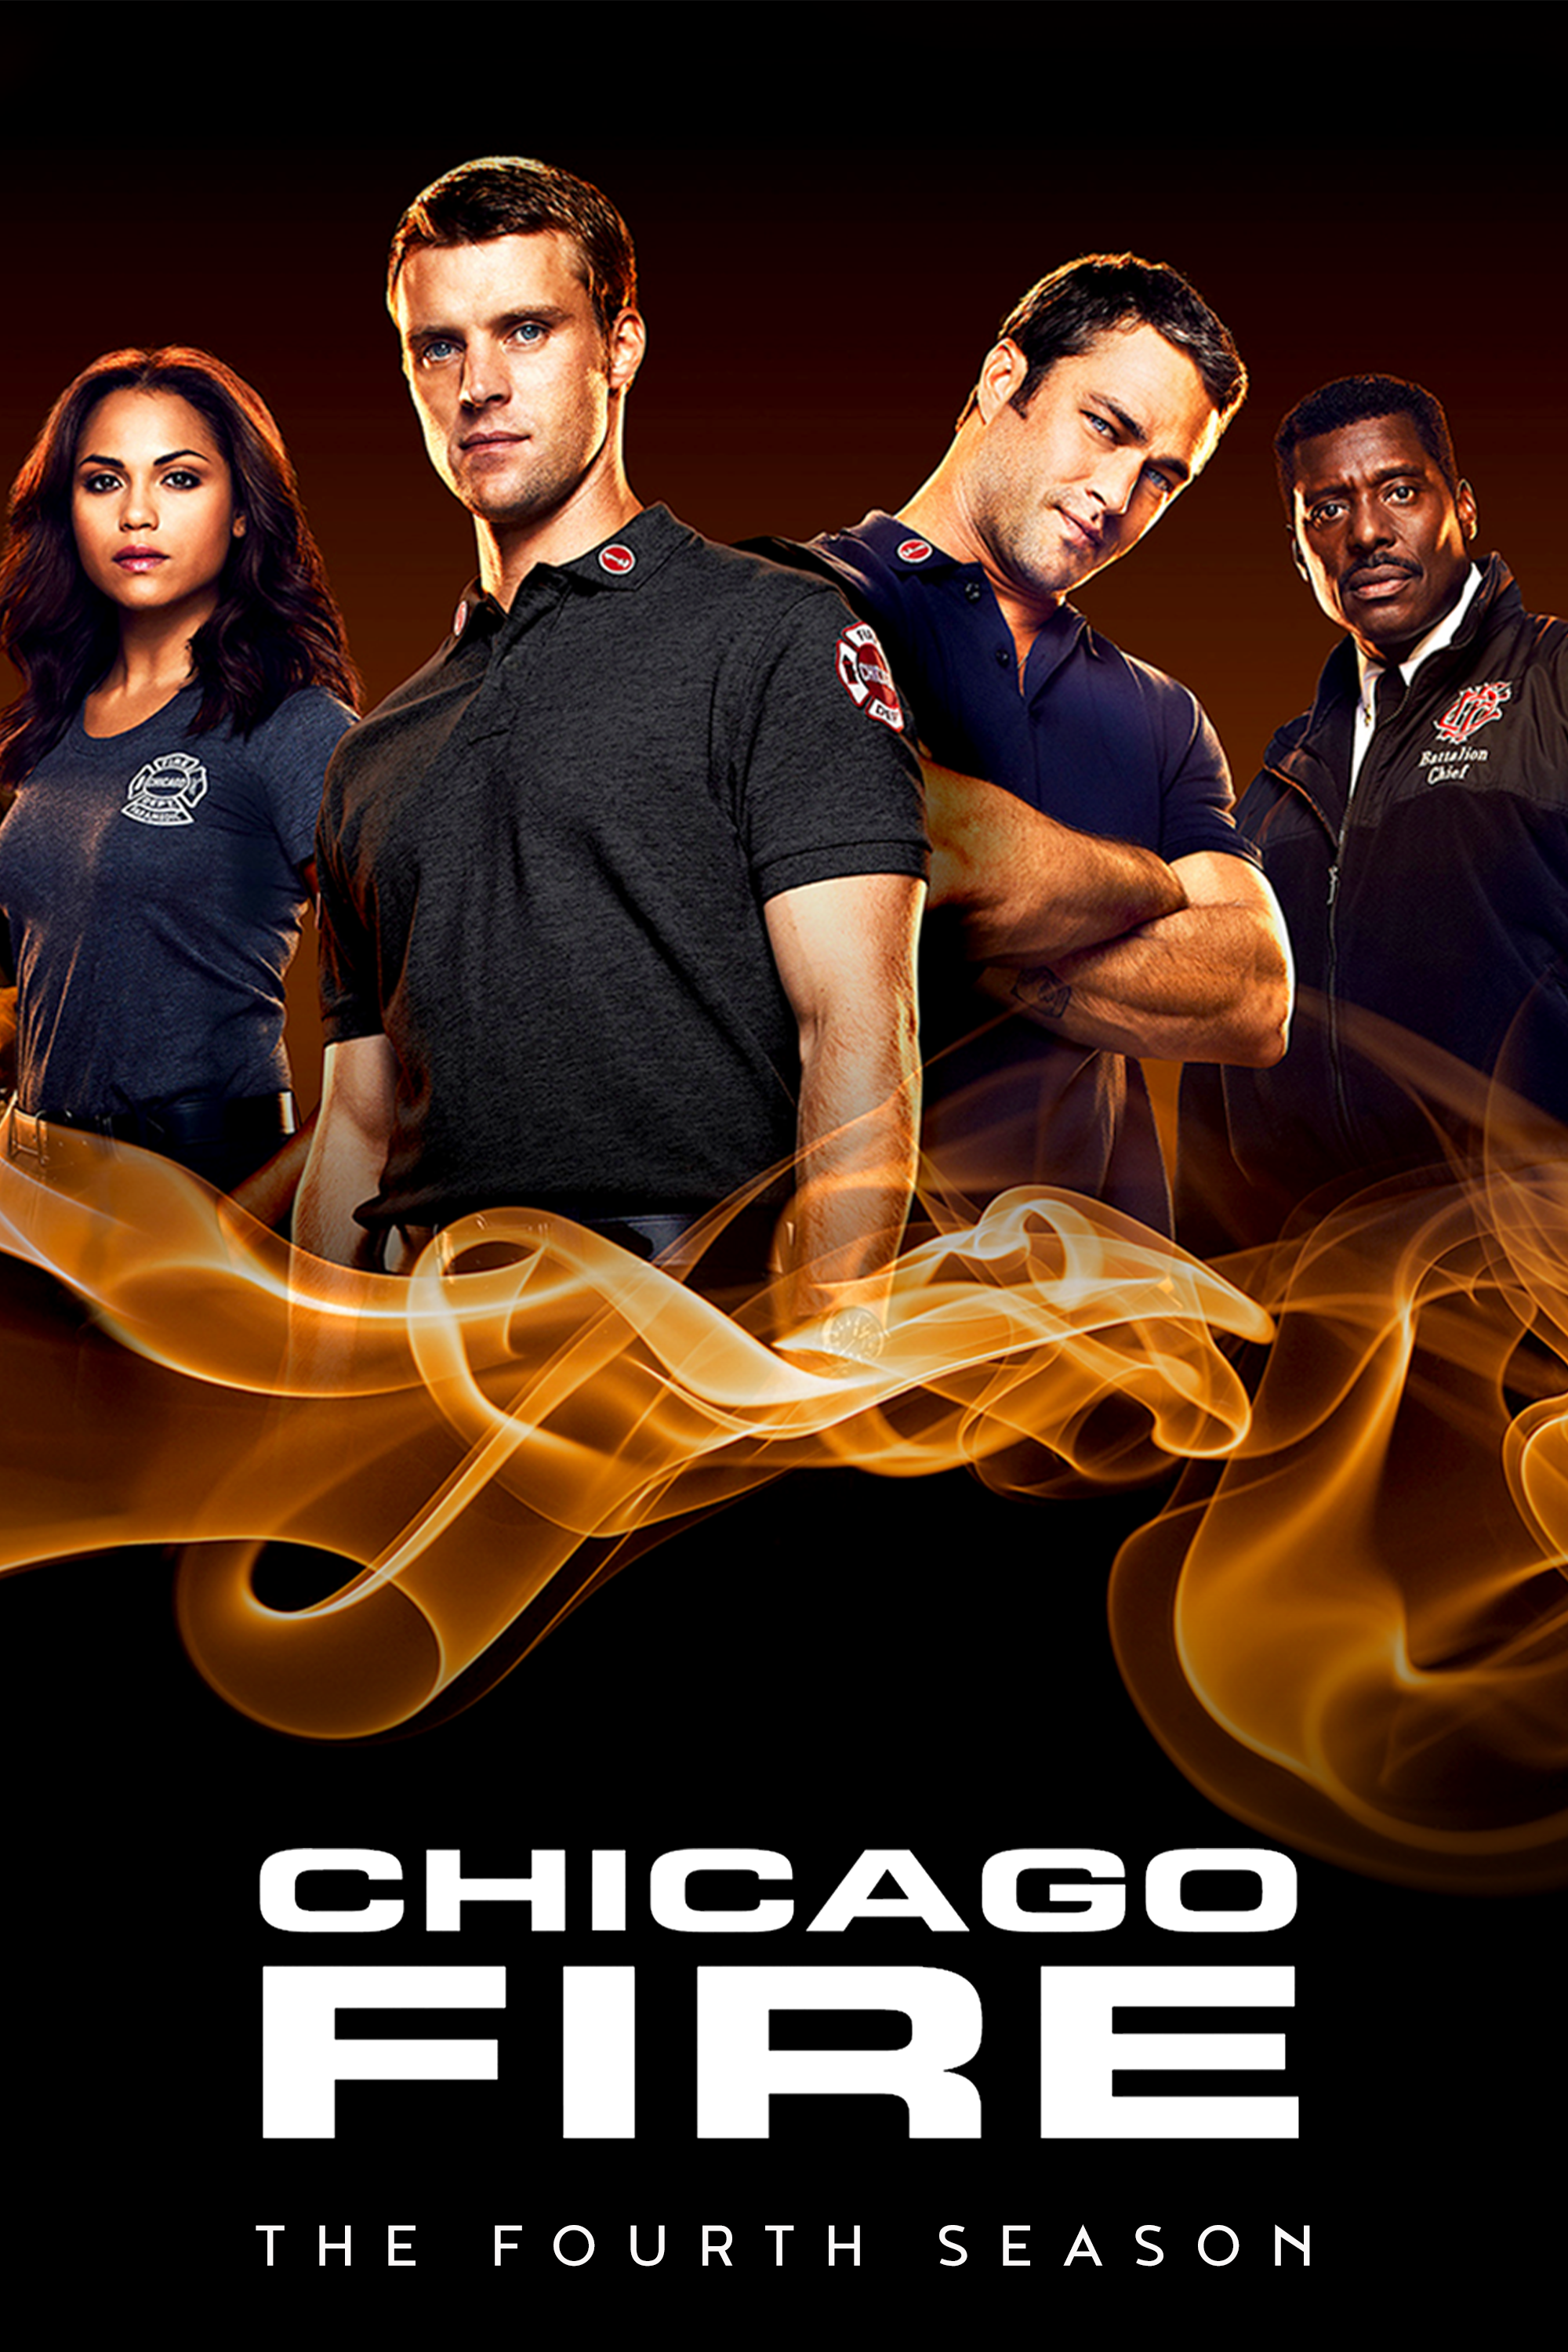 ดูหนังออนไลน์ฟรี Chicago Fire Season 4 EP.22 ชิคาโก้ ไฟร์ หน่วยดับเพลิงท้านรก ซีซั่นที่ 4 ตอนที่ 22